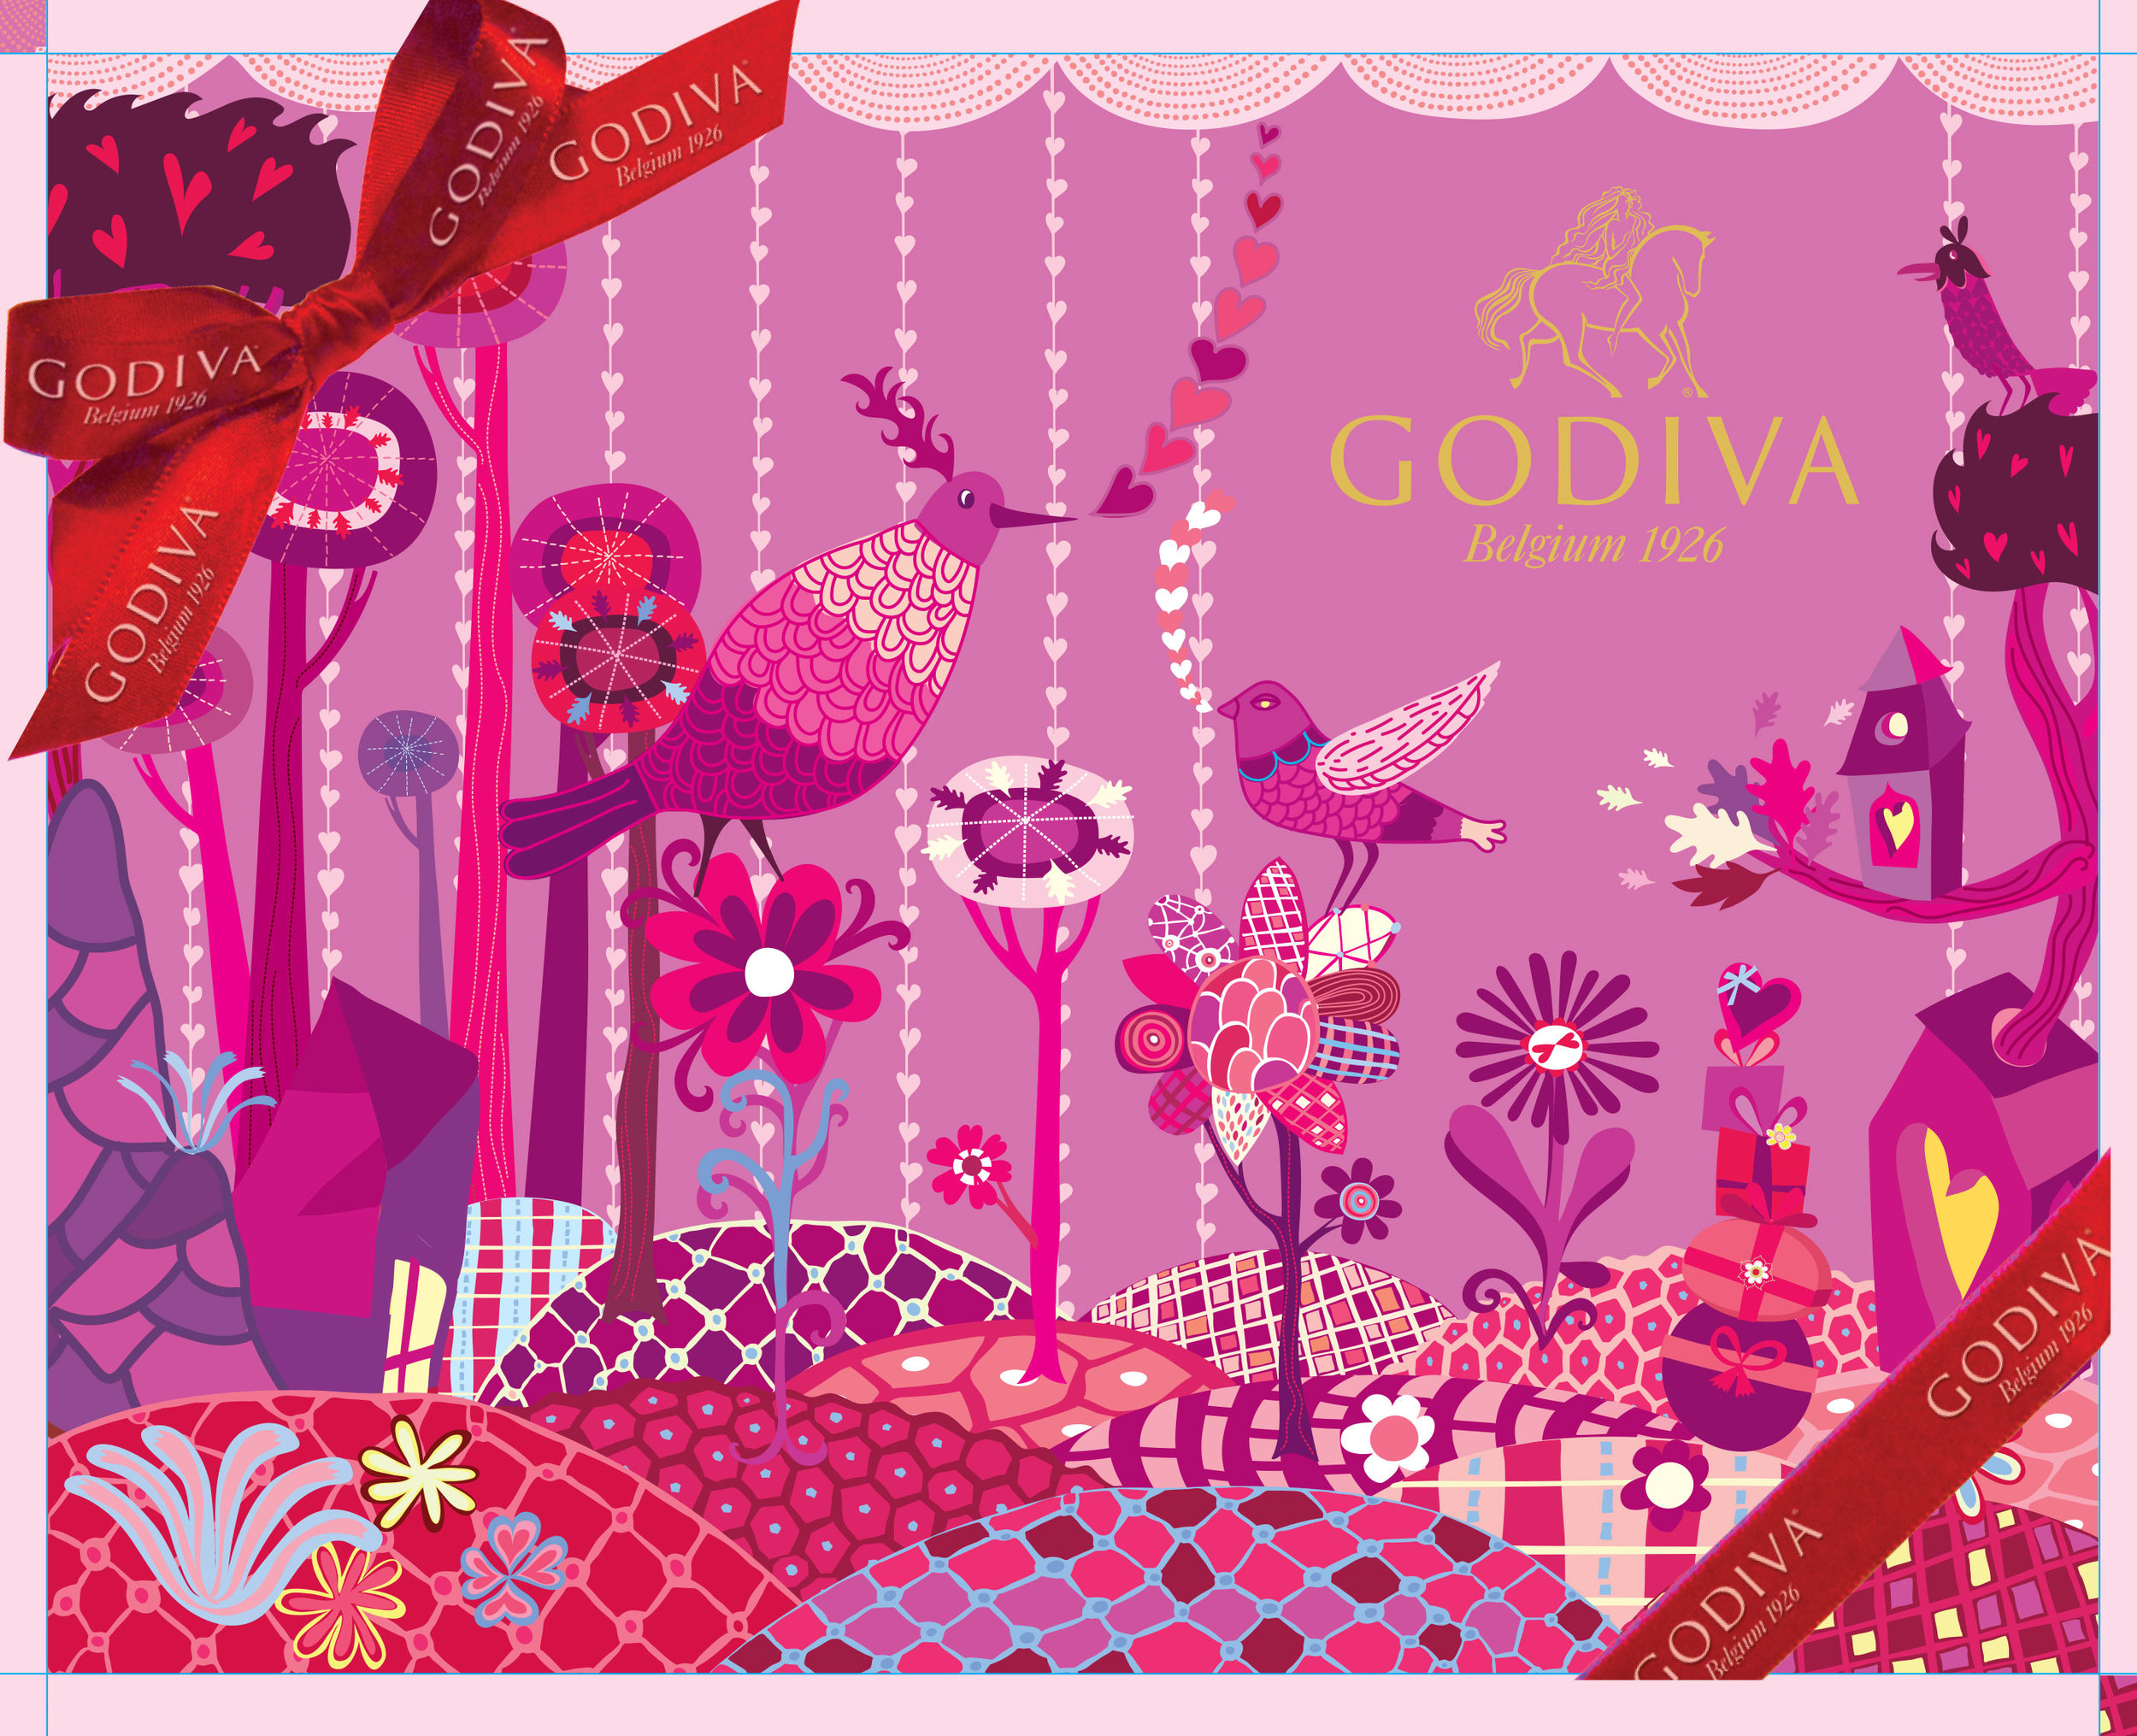 Godiva Chocolate White Day Packaging